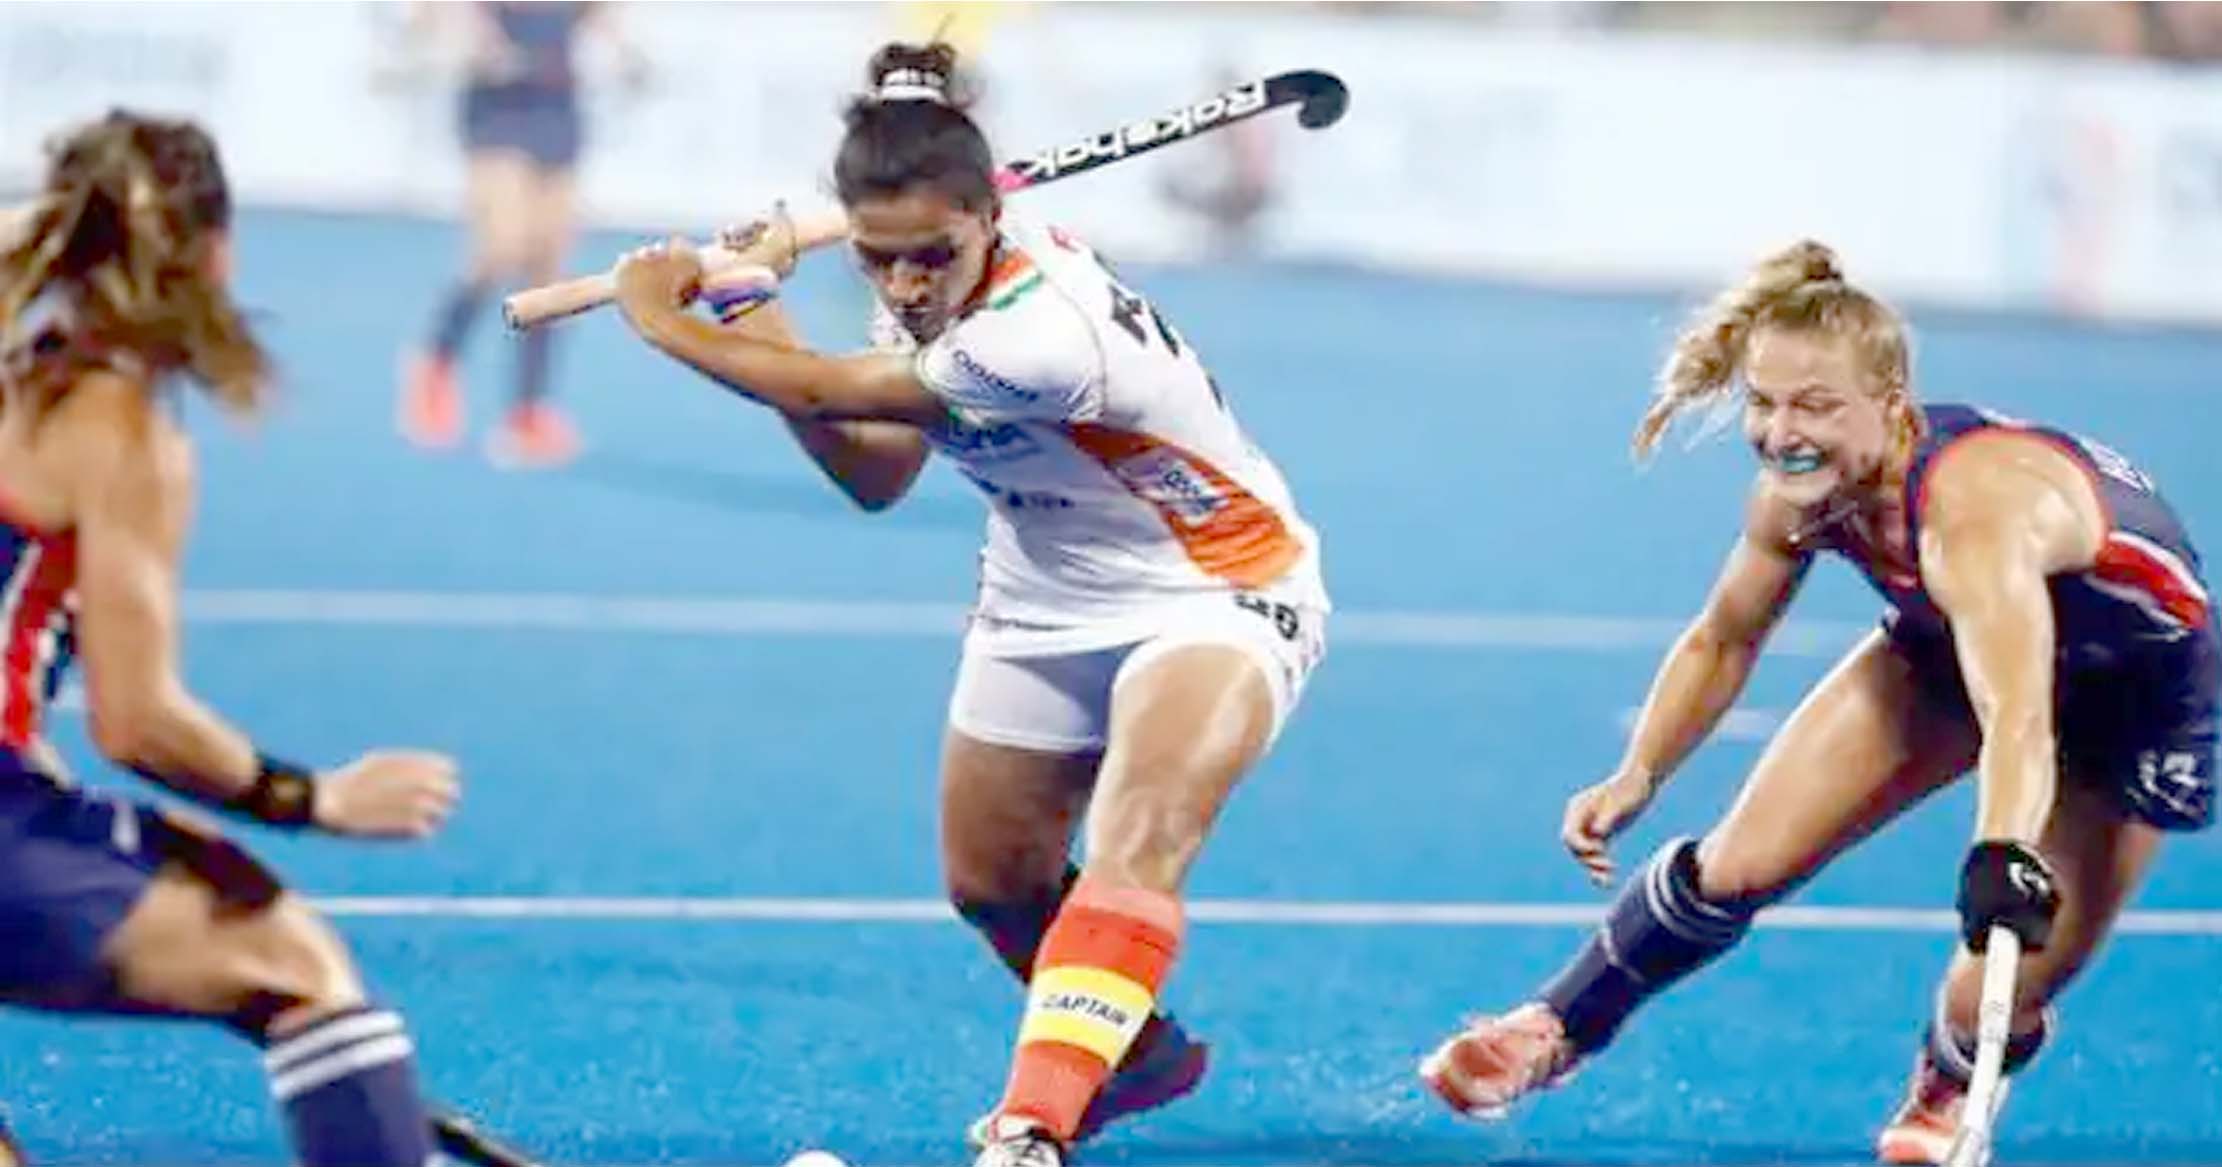 भारतीय महिला हॉकी टीम दूसरे मैच में जर्मनी से 0-1 से हारी